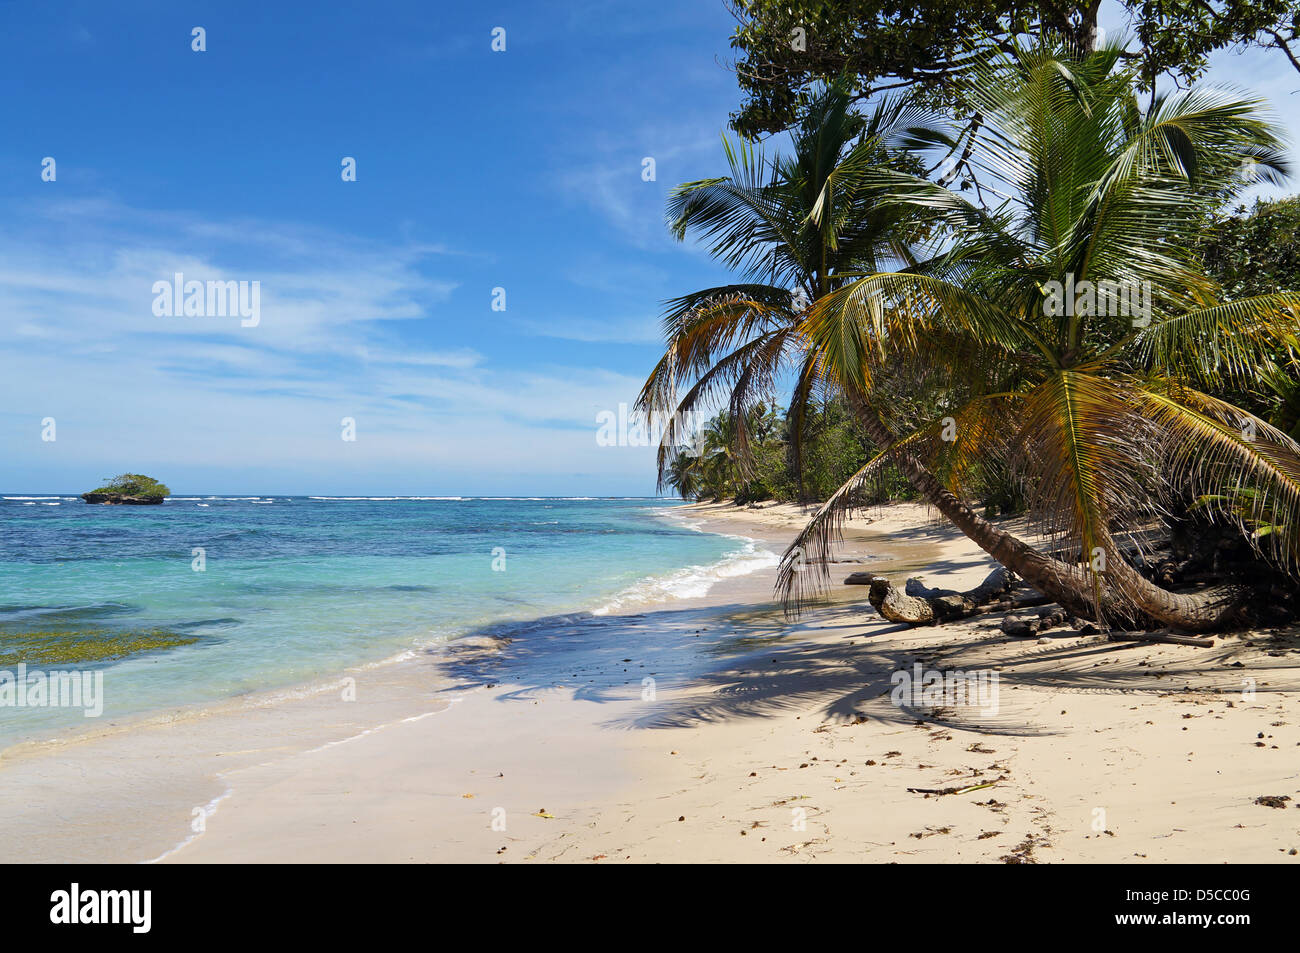 Tropischen wilden Sandstrand mit einer kleinen Insel, Kokospalmen und türkisfarbenes Wasser Stockfoto